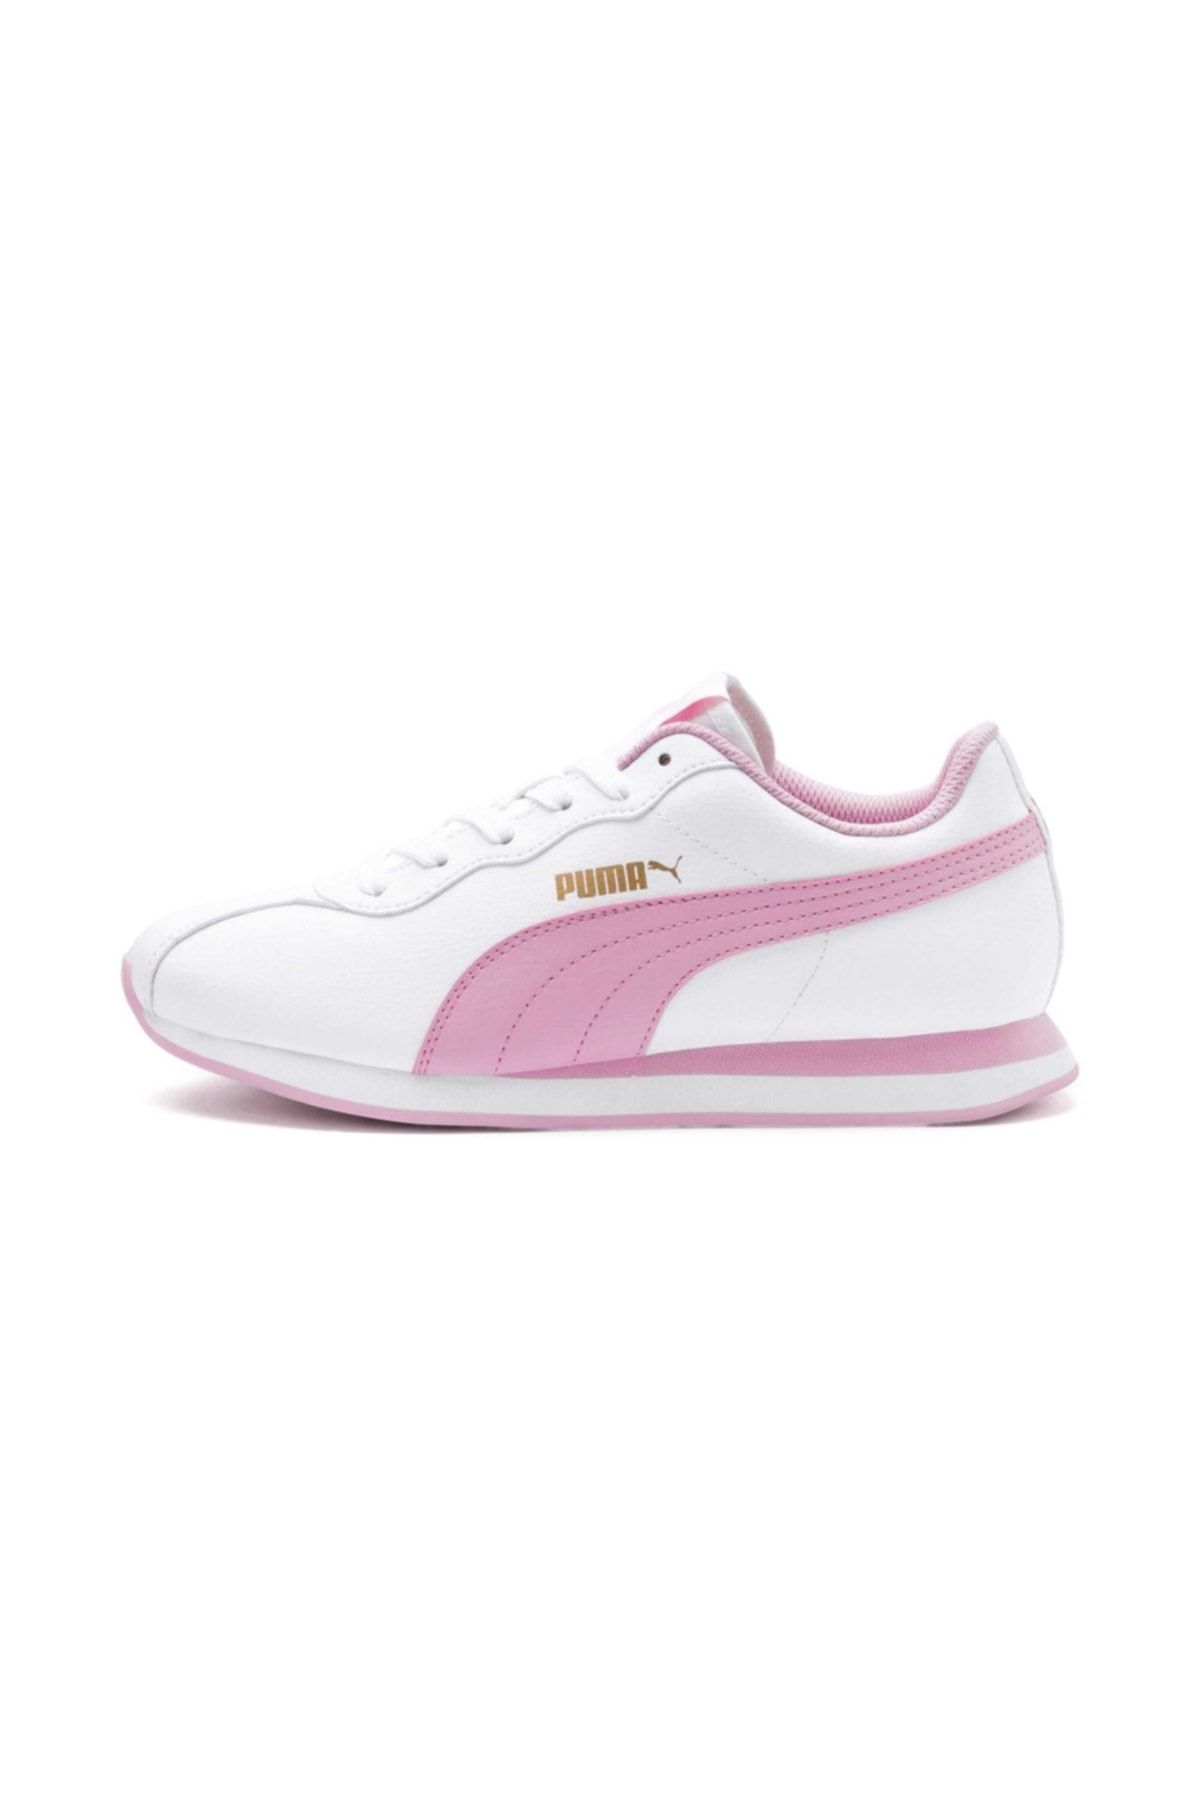 Puma Turin Ii Beyaz Pembe Kadın Sneaker Ayakkabı 100415117